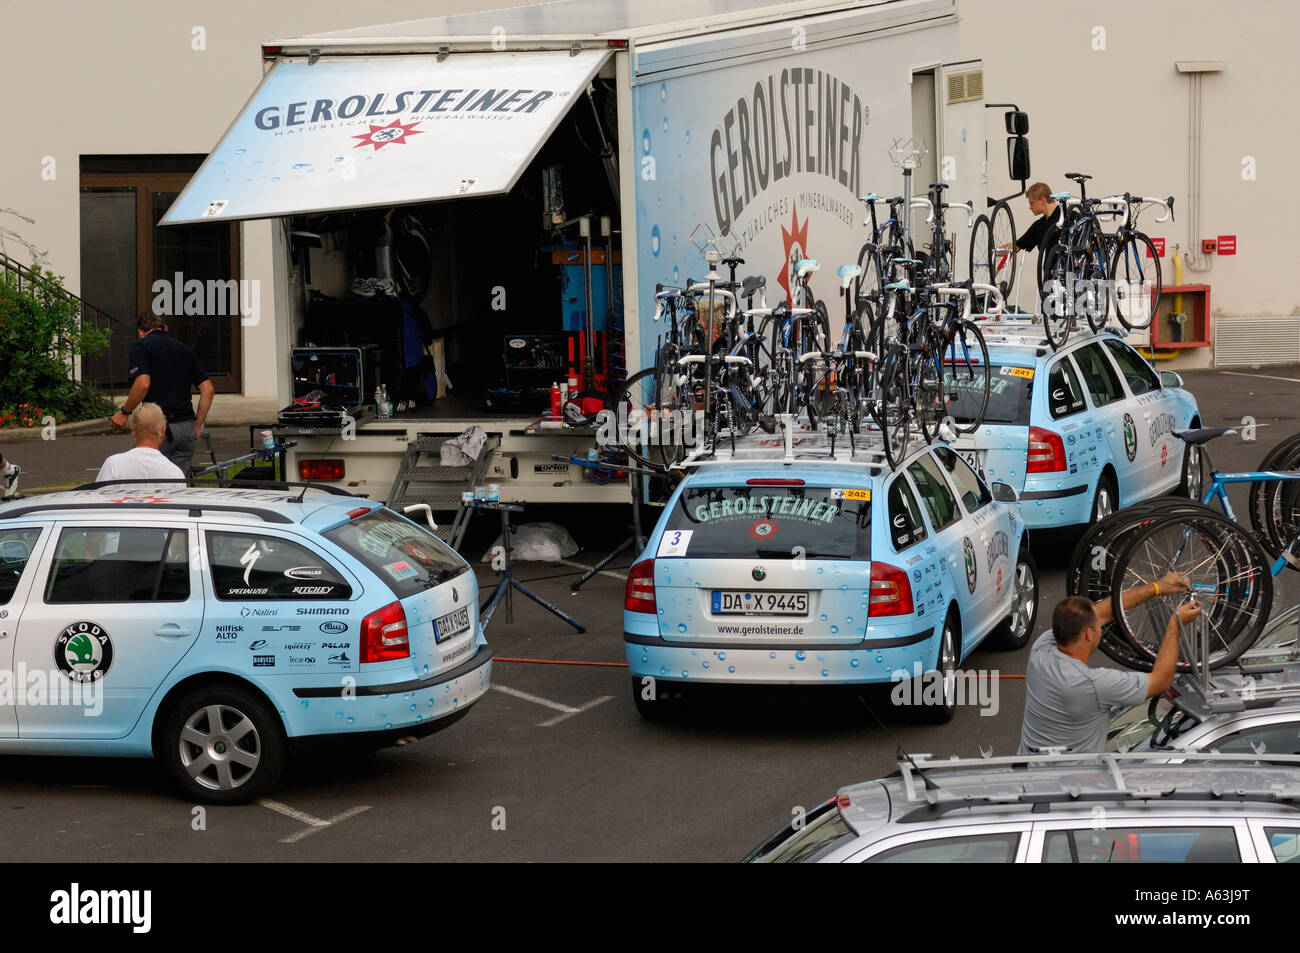 Tour de France team apparecchiature per la preparazione per la giornata di stage Foto Stock